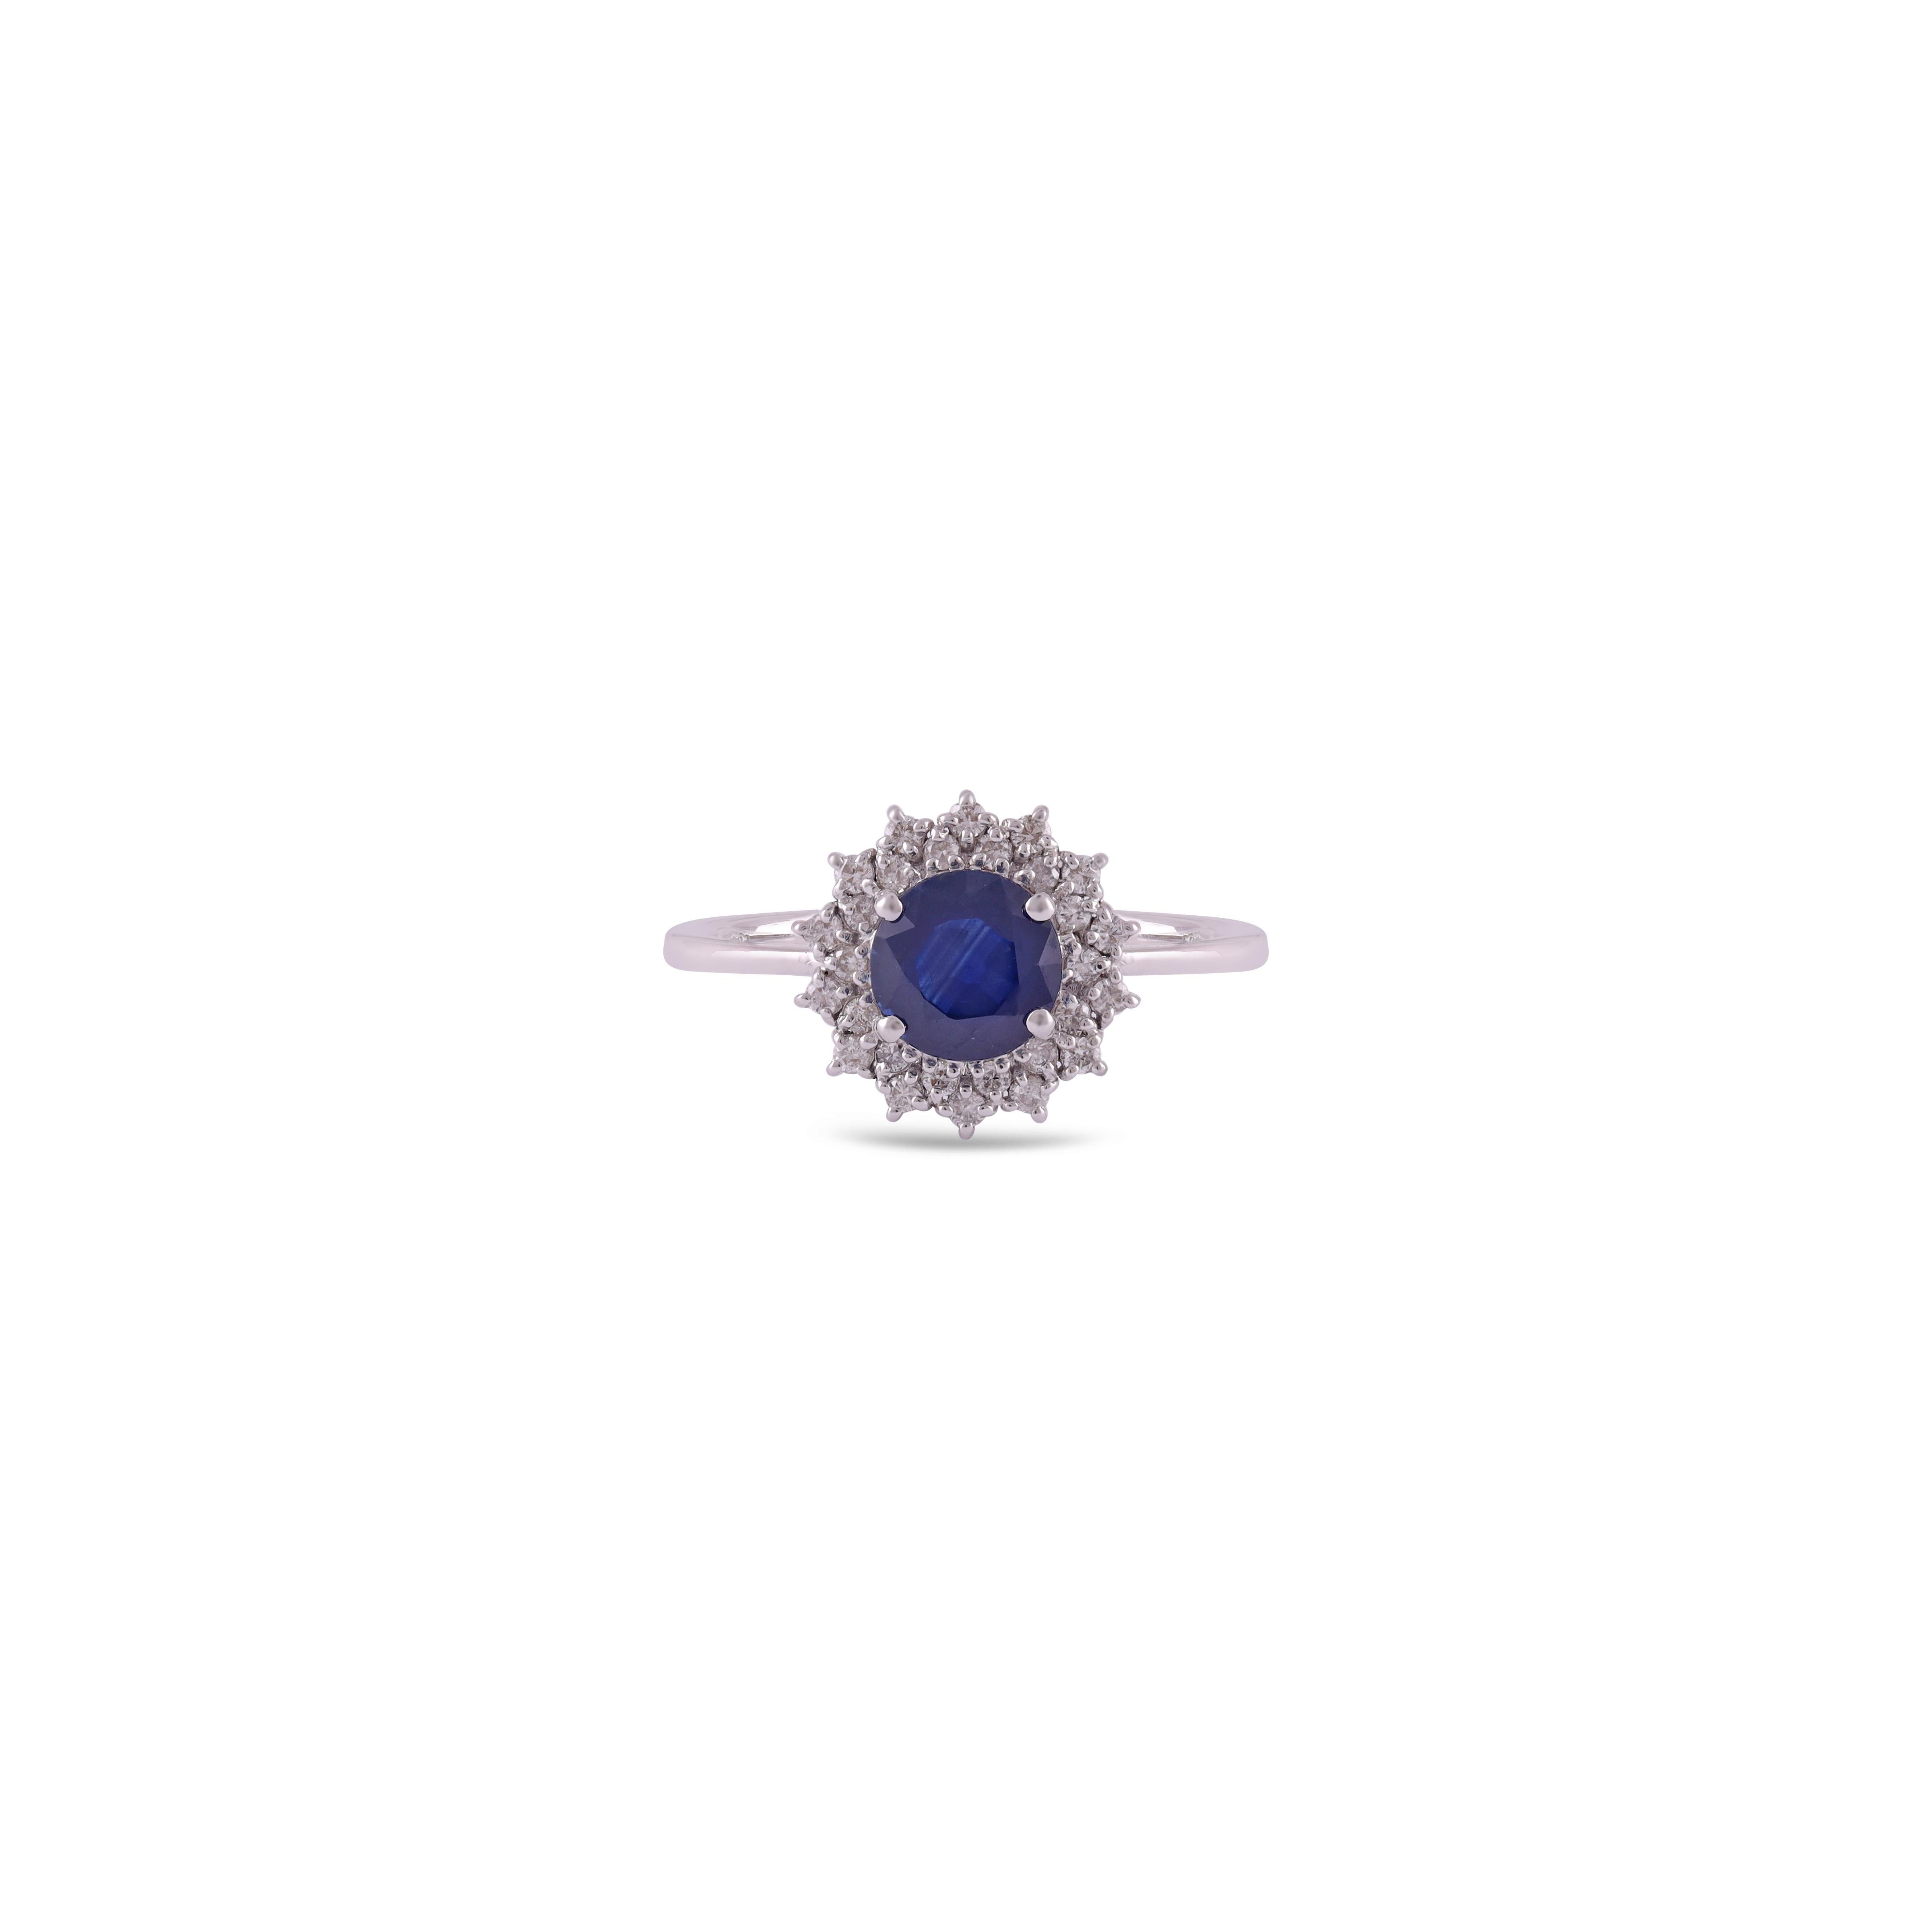 Saphir bleu - 1,70 carats
Diamant taille ronde - 0,31 carat
Or blanc 18KT